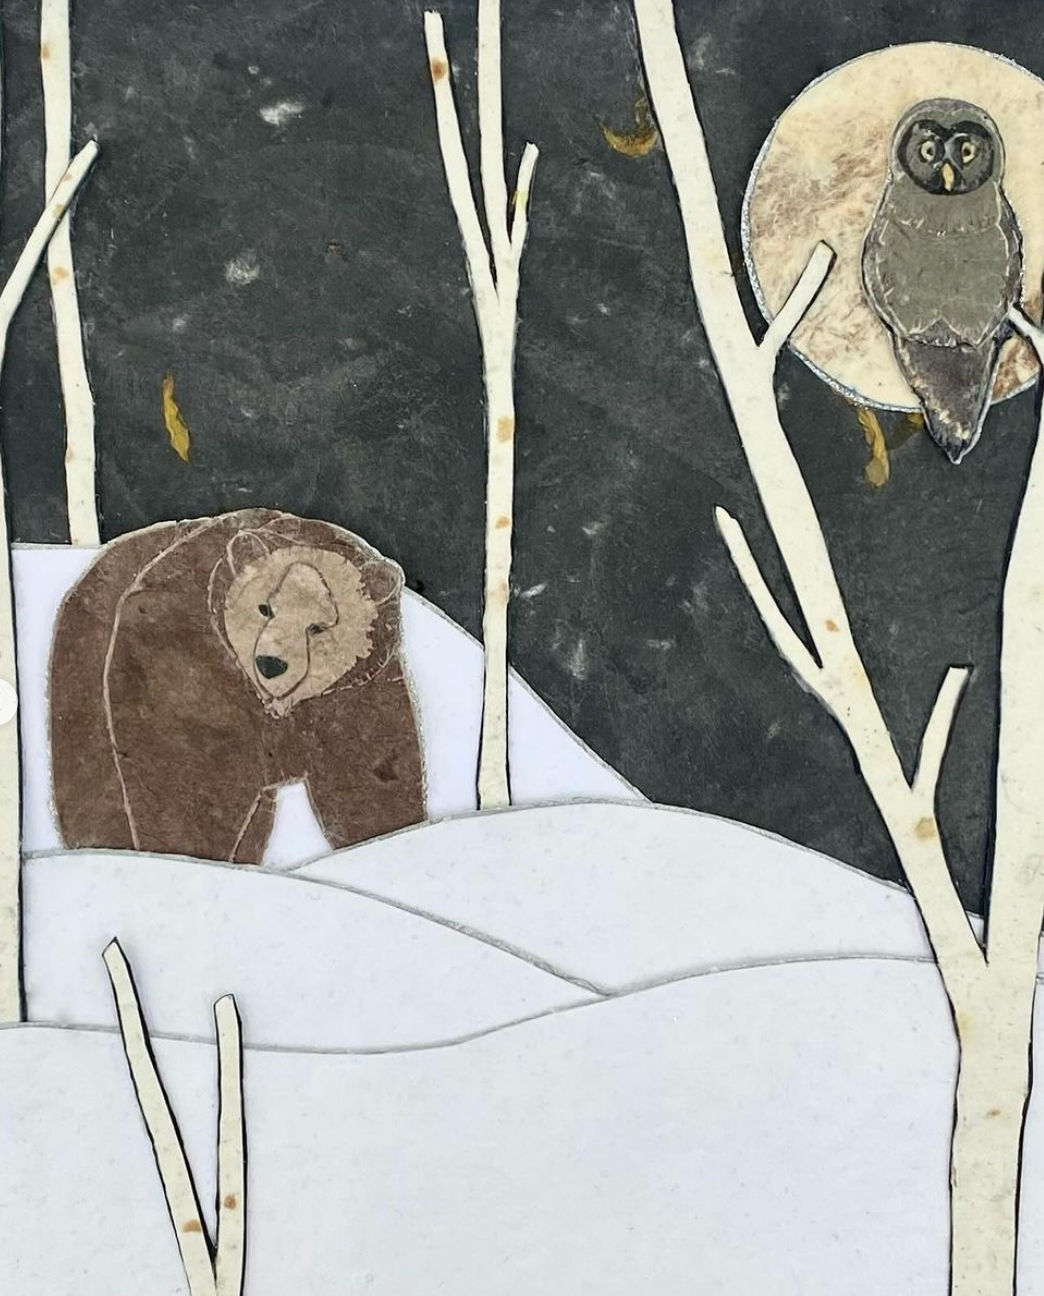 Kris Batchelder: Snowy Night Grey Owl & Grizzly Original